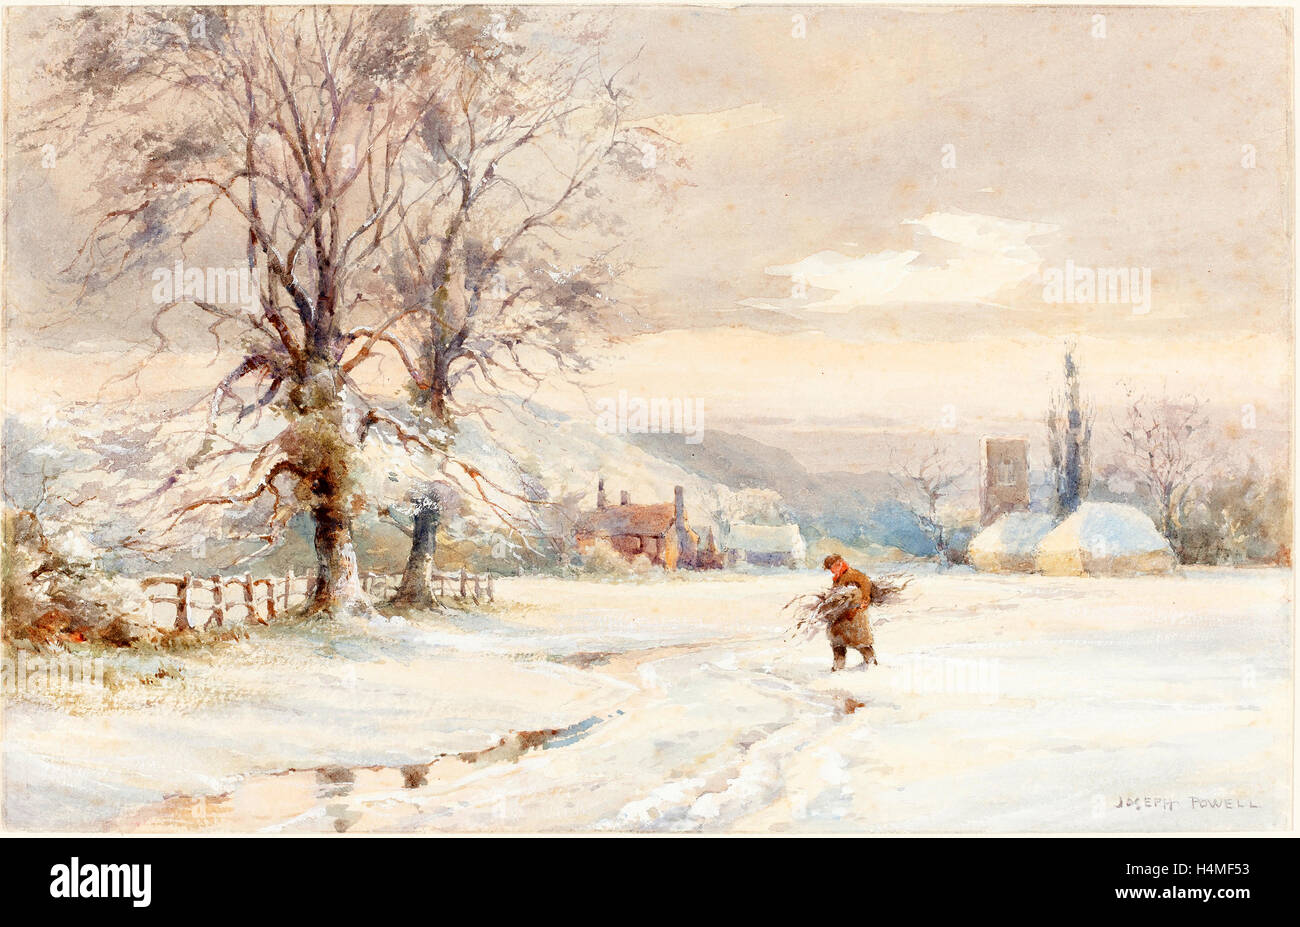 Joseph Rubens Powell (1835-1871) britannique, actif, hiver, Aquarelle et gouache sur mine de plomb sur papier vélin Banque D'Images